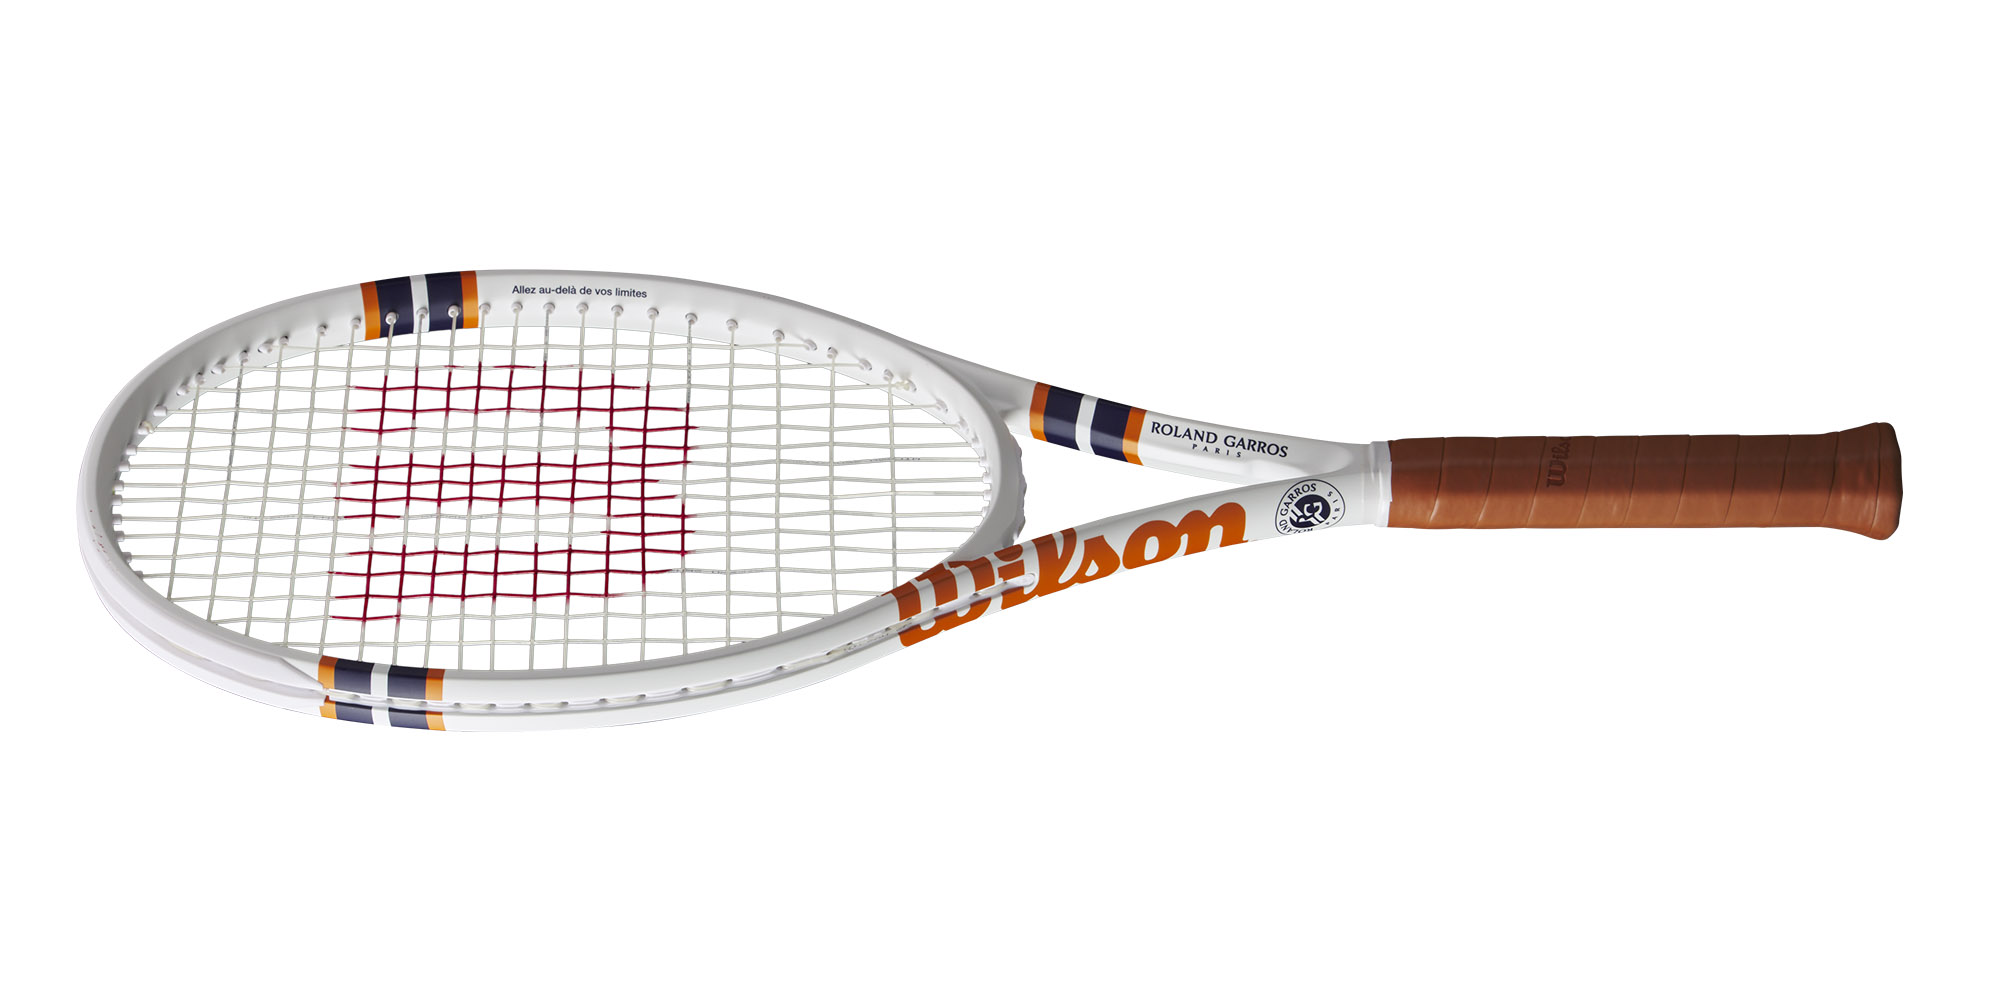 Wilson Roland Garros clash racket